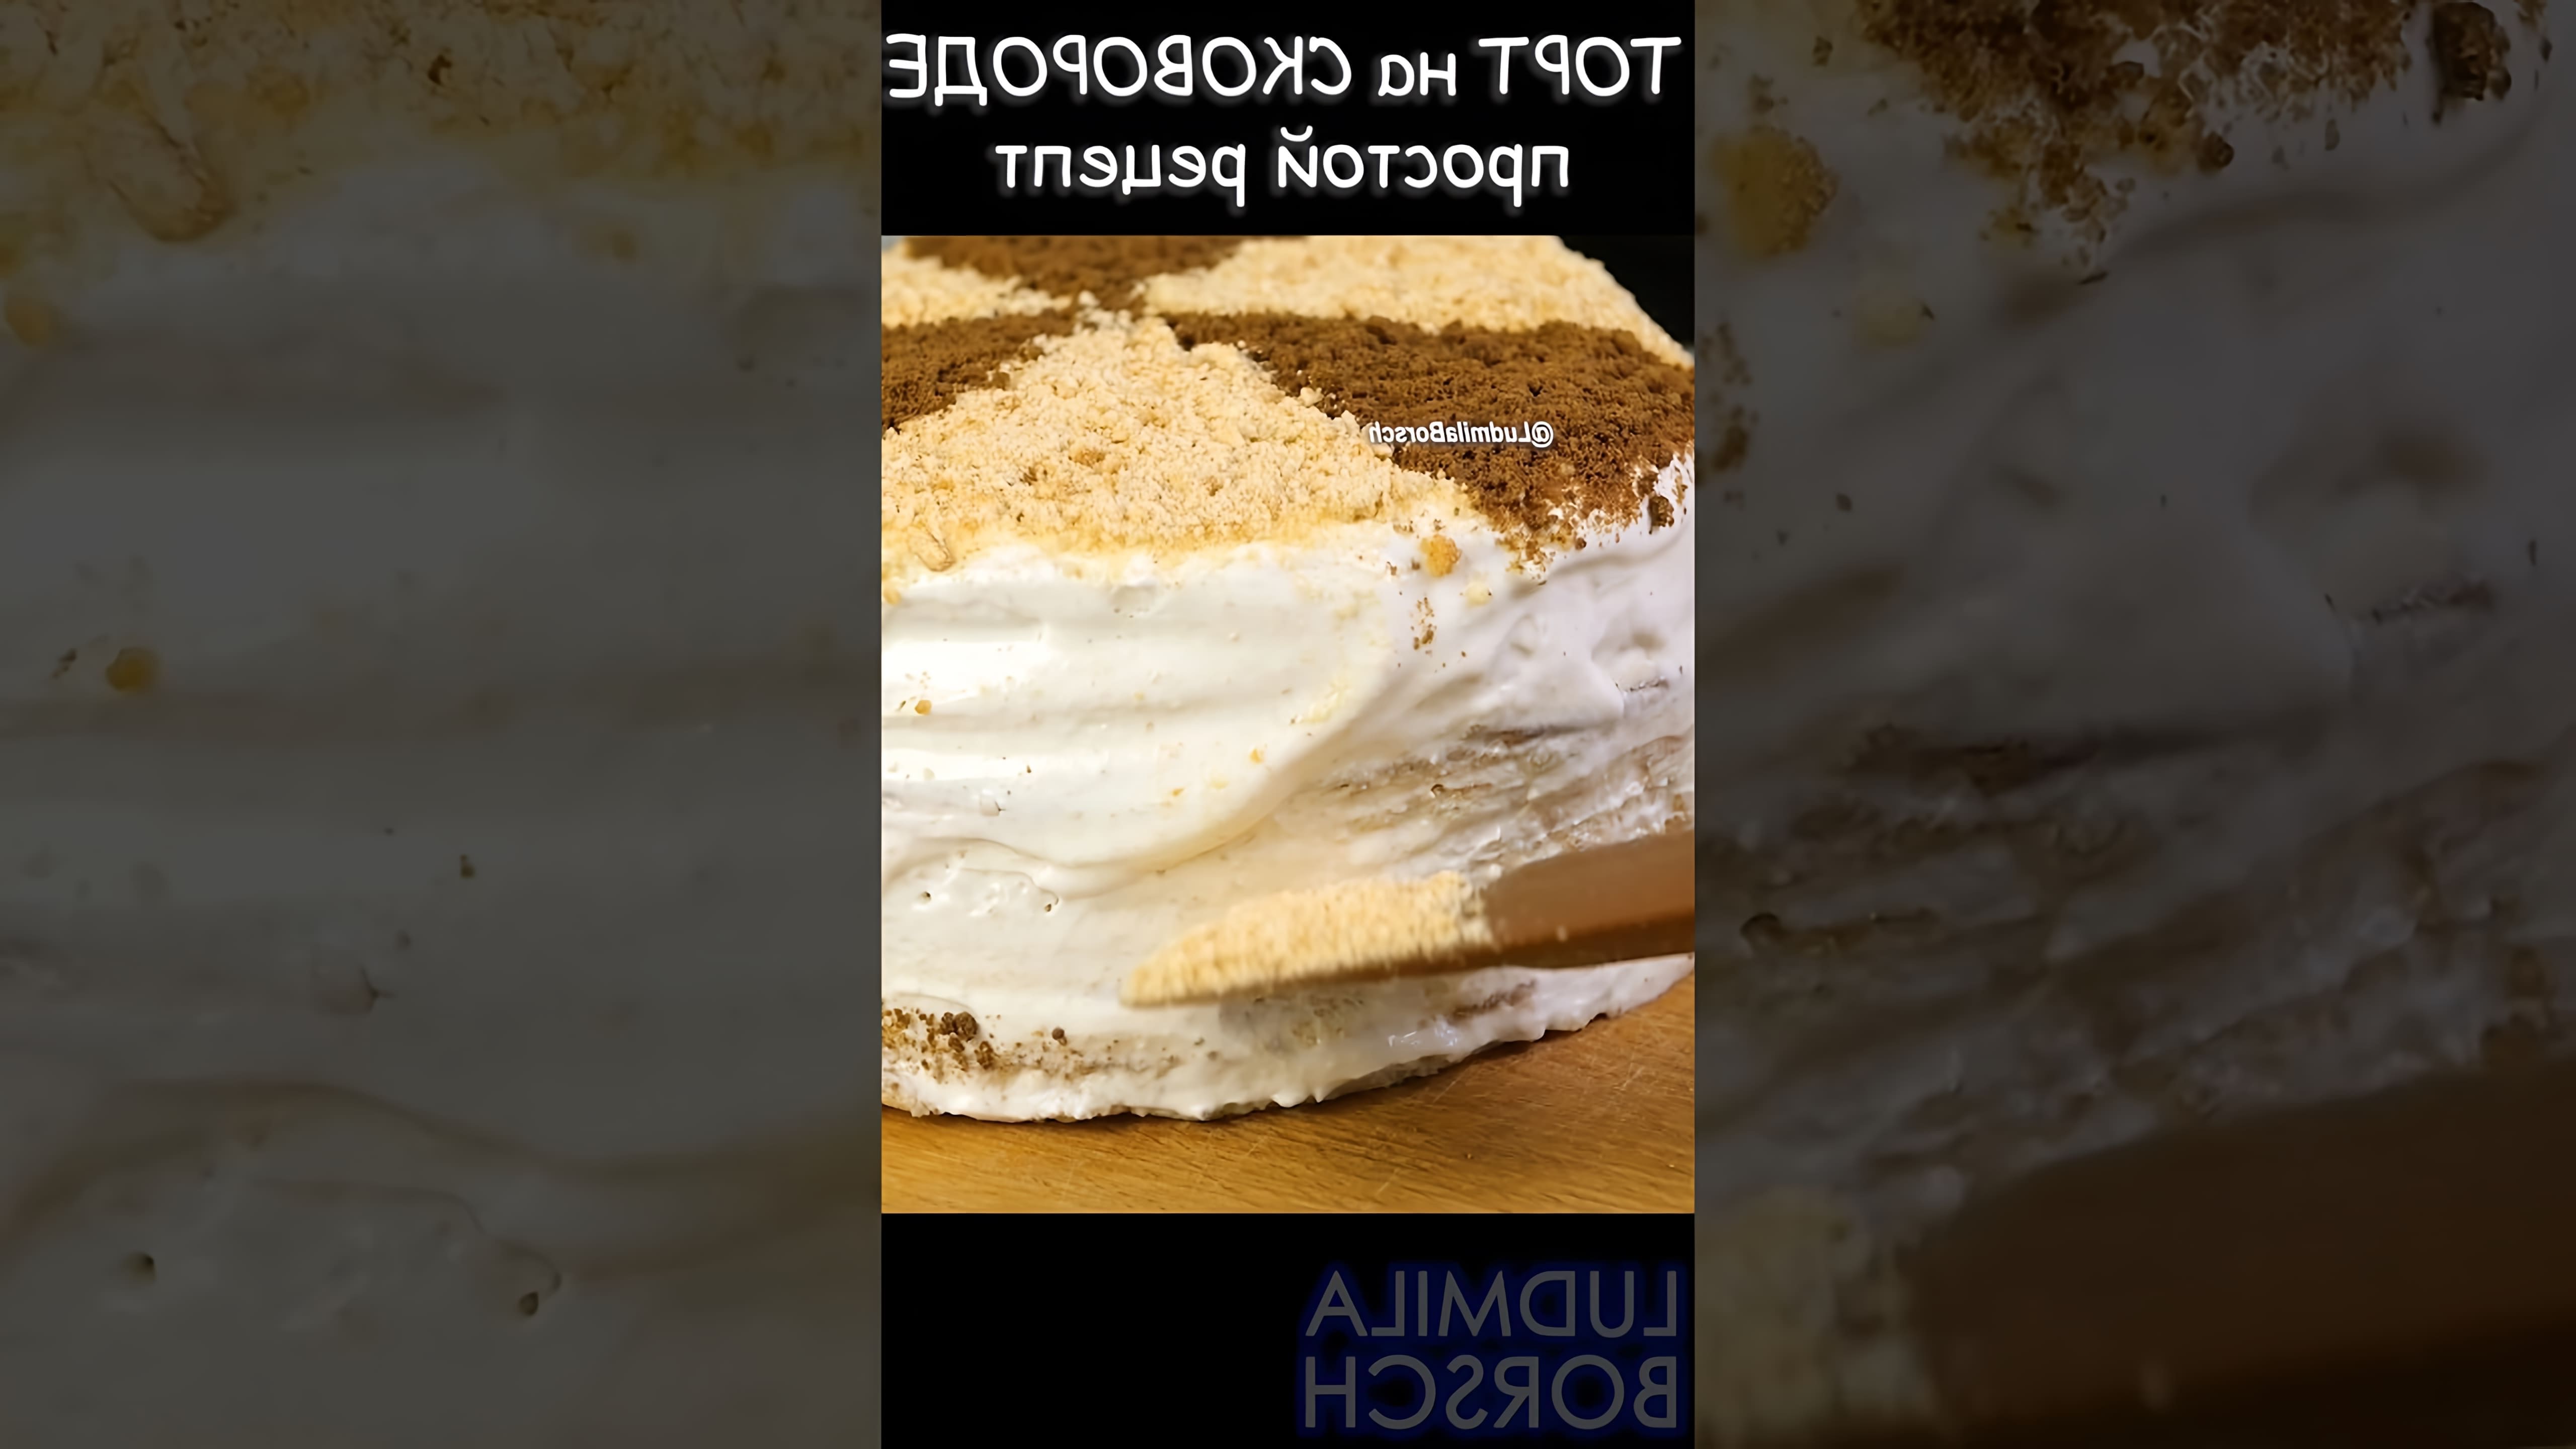 В этом видео Людмила показывает, как приготовить идеальный торт "Сметанник" на сковороде